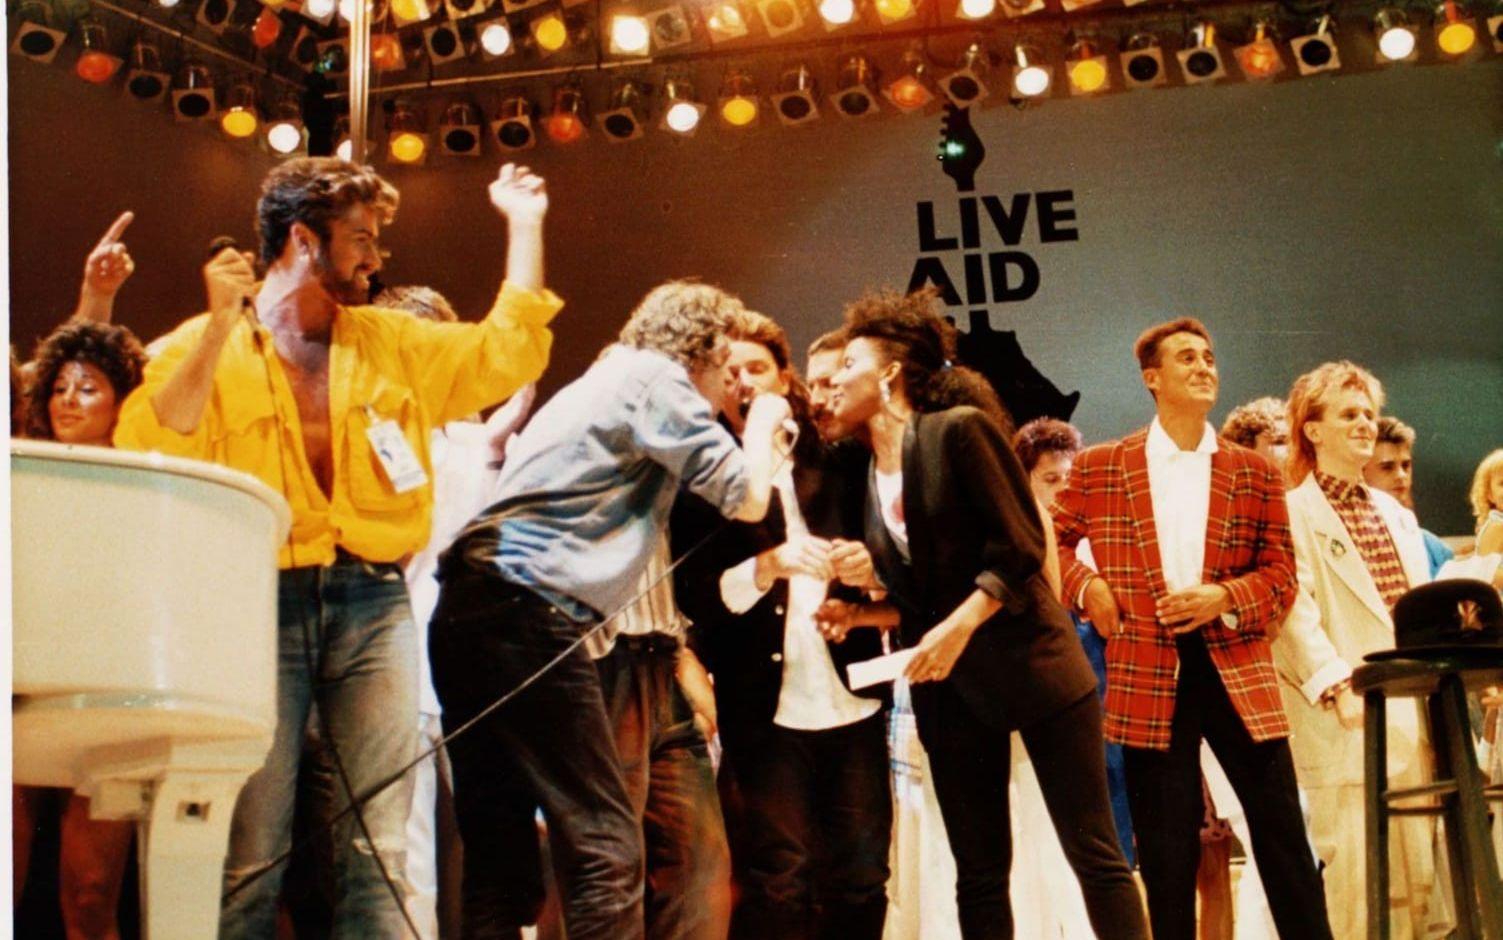 VÄRLDEN SAMLAS FÖR BARNEN. Den 13 juli 1985 genomfördes två välgörenhetsgalor med namnet Live Aid på Wembley Stadium i London och JFK Stadium i Philadelphia. Konserterna sändes live via satellit och sågs av uppskattningsvis 400 miljoner människor. Foto: TT